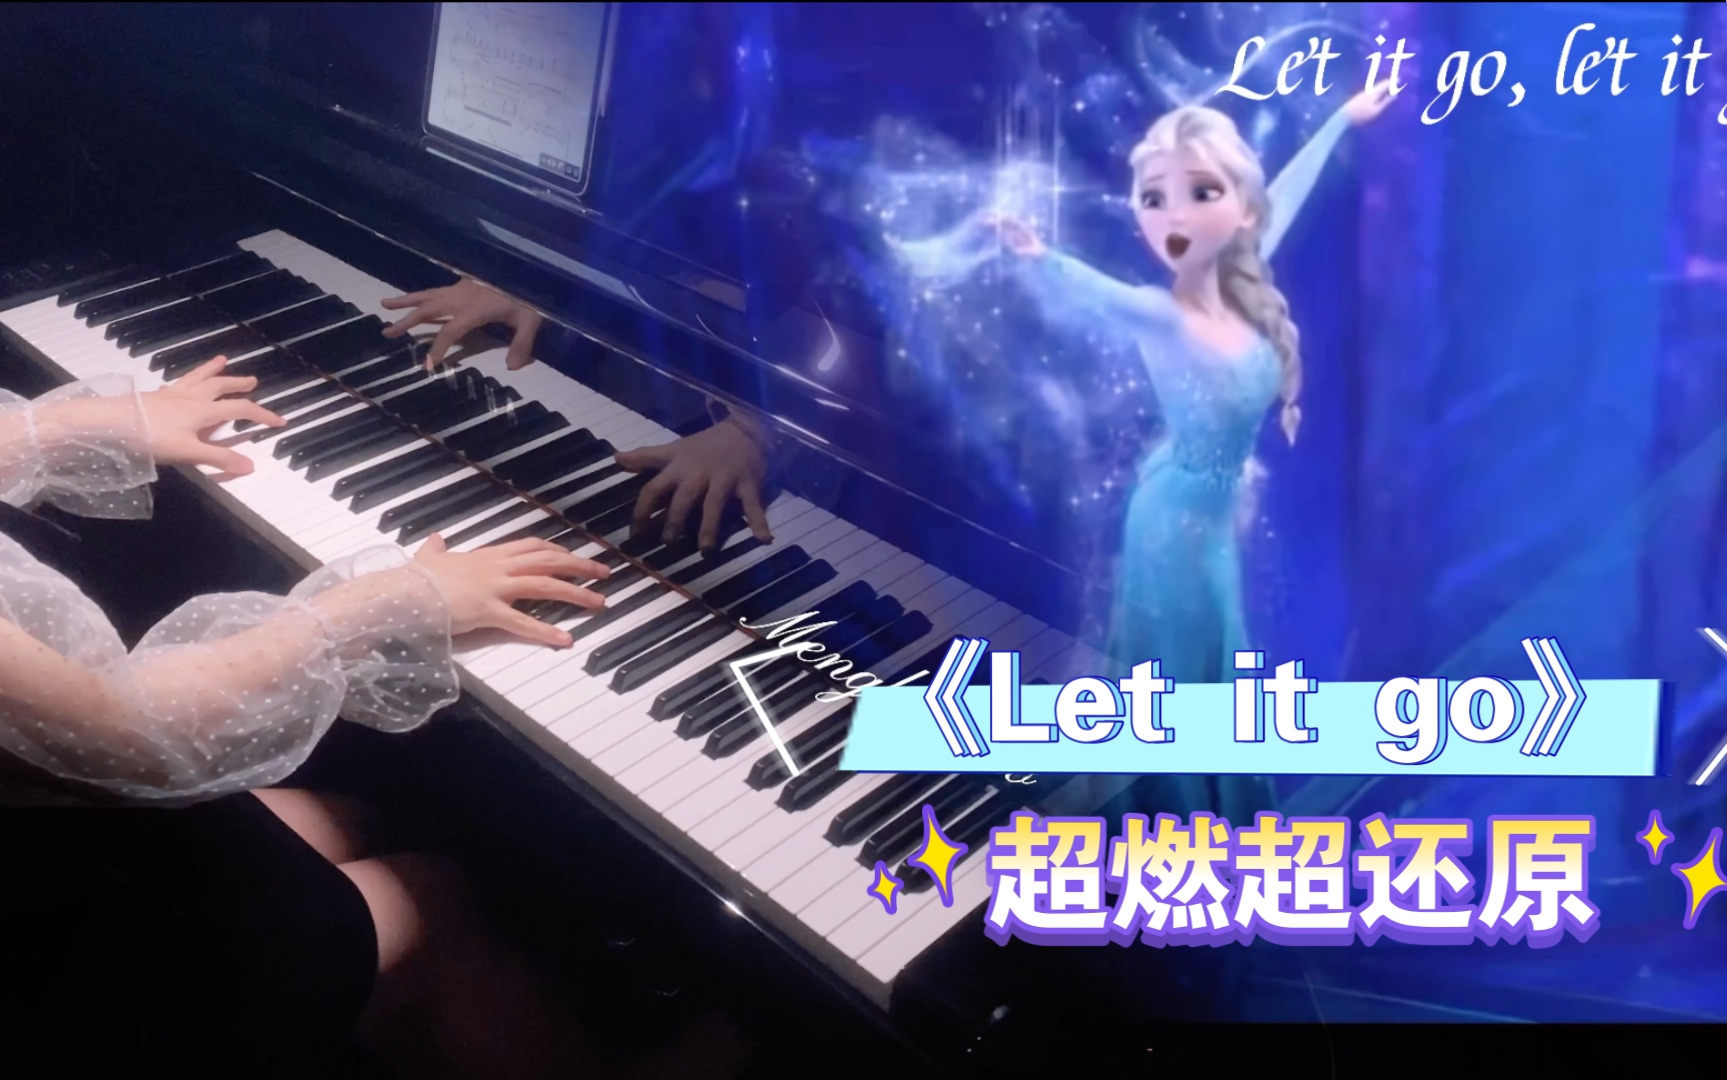 钢琴《Let it go 》| 超燃超还原完整版冰雪奇缘主题曲。up主有一个女王梦